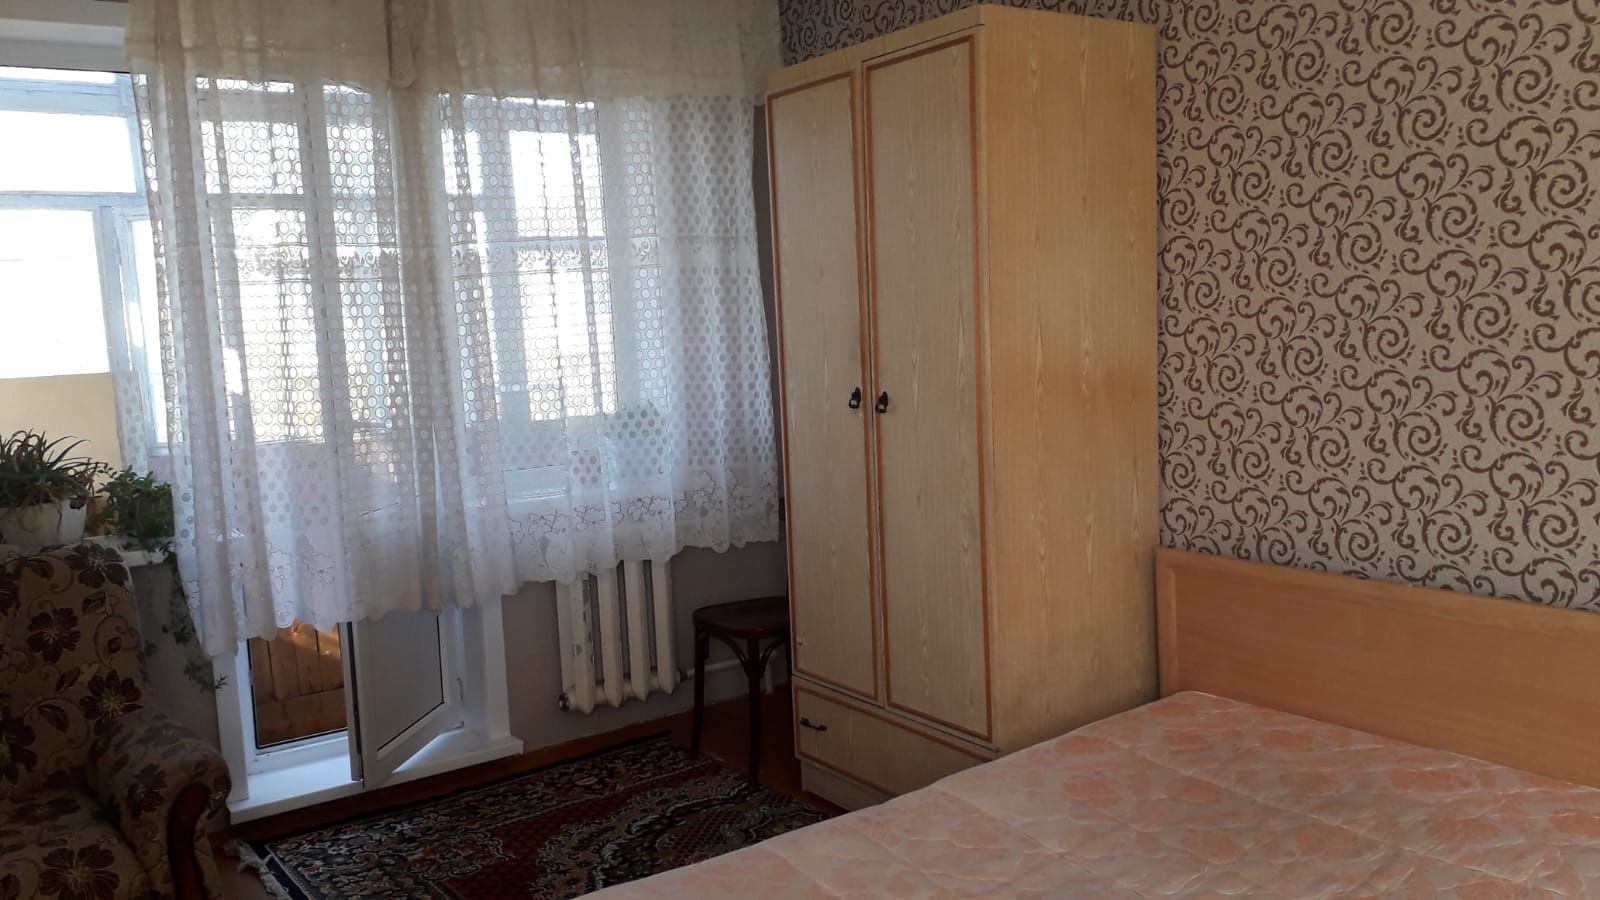 Продам двухкомнатную квартиру по ул Валиханова 3.